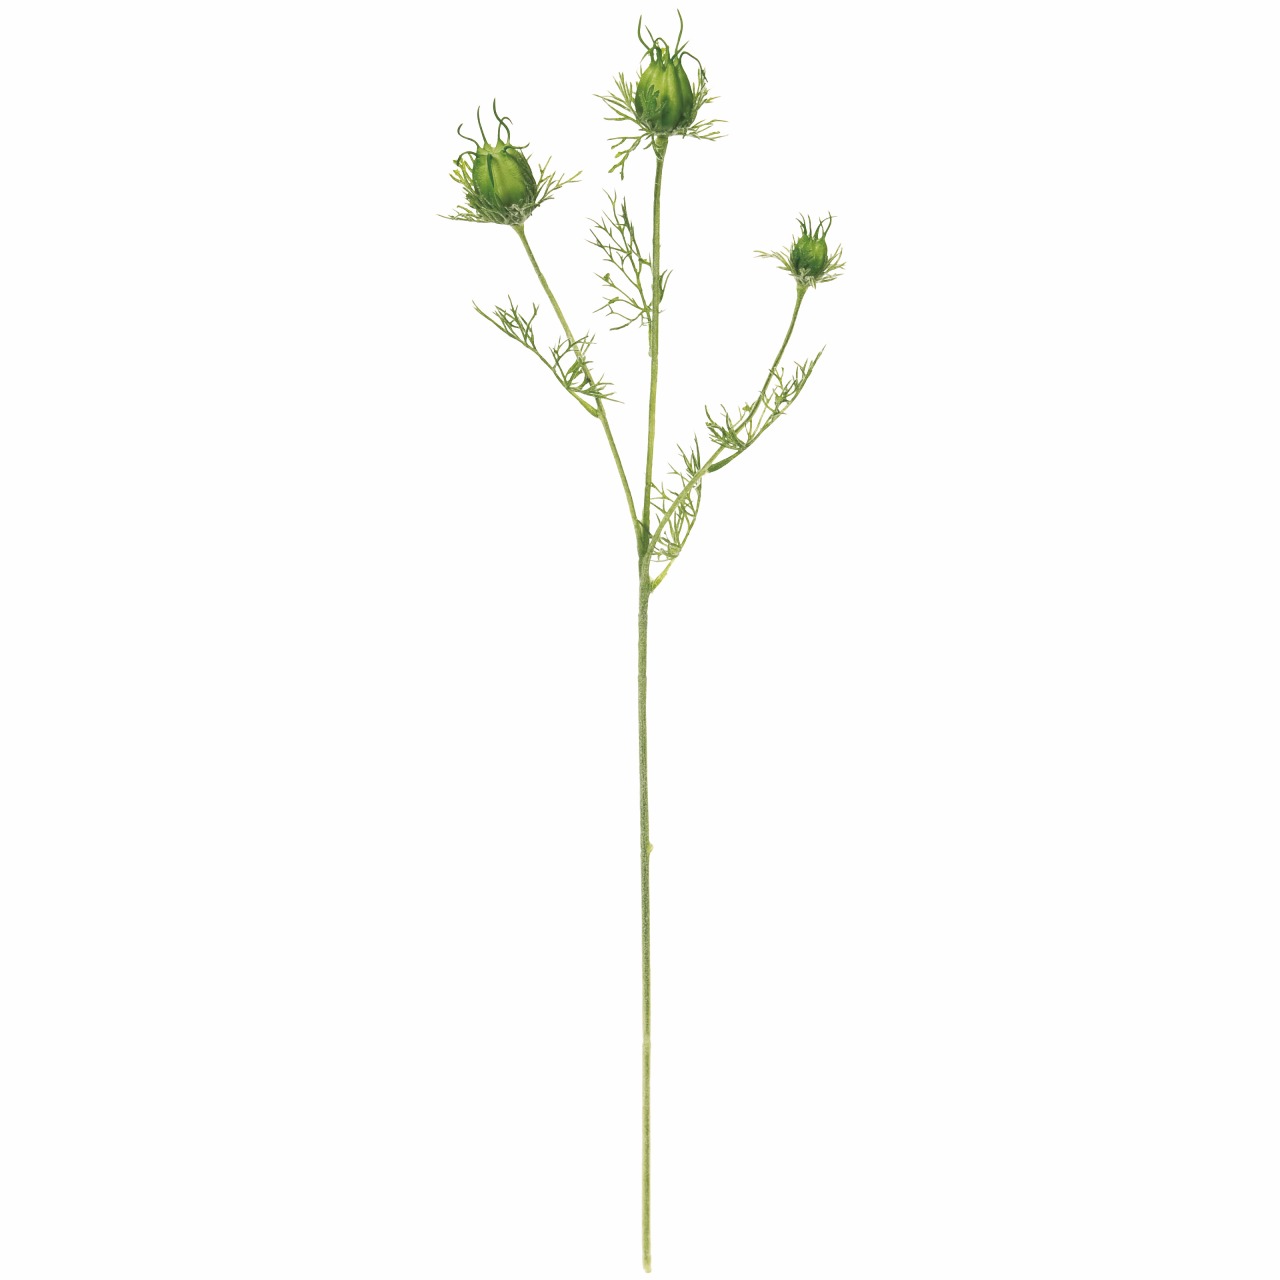 マイフラ 通販 Magiq フーセンポピー ライトグリーン アーティフィシャルフラワー 造花 Fm 023 花径 約2 3 5 全長 約56cm ライトグリーン Magiq アーティフィシャルフラワー 造花 全国にmagiq 花器 花資材などをお届けします